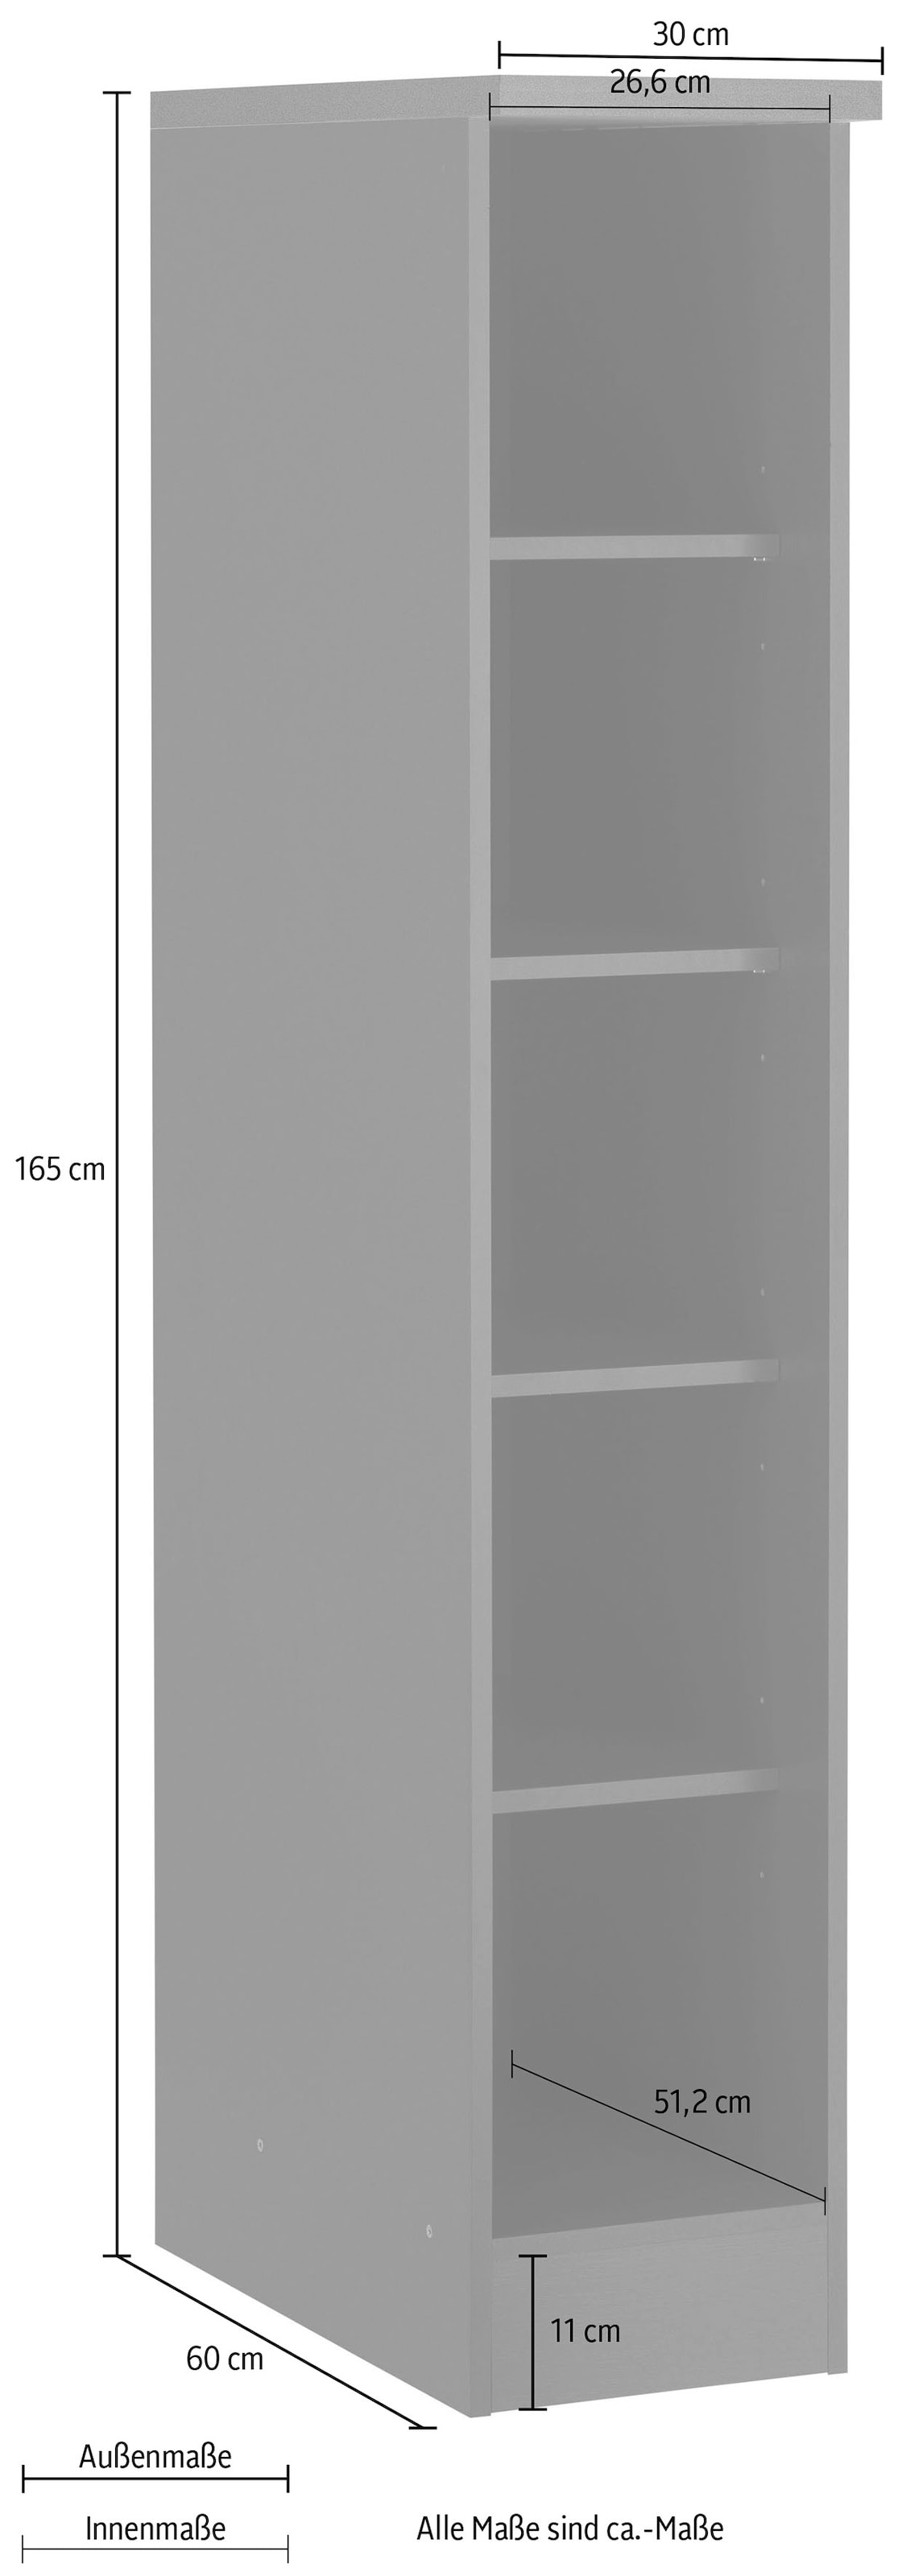 HELD MÖBEL Küchenregal »Colmar«, 30 cm breit, 165 cm hoch, 4 verstellbare Einlegeböden, viel Stauraum